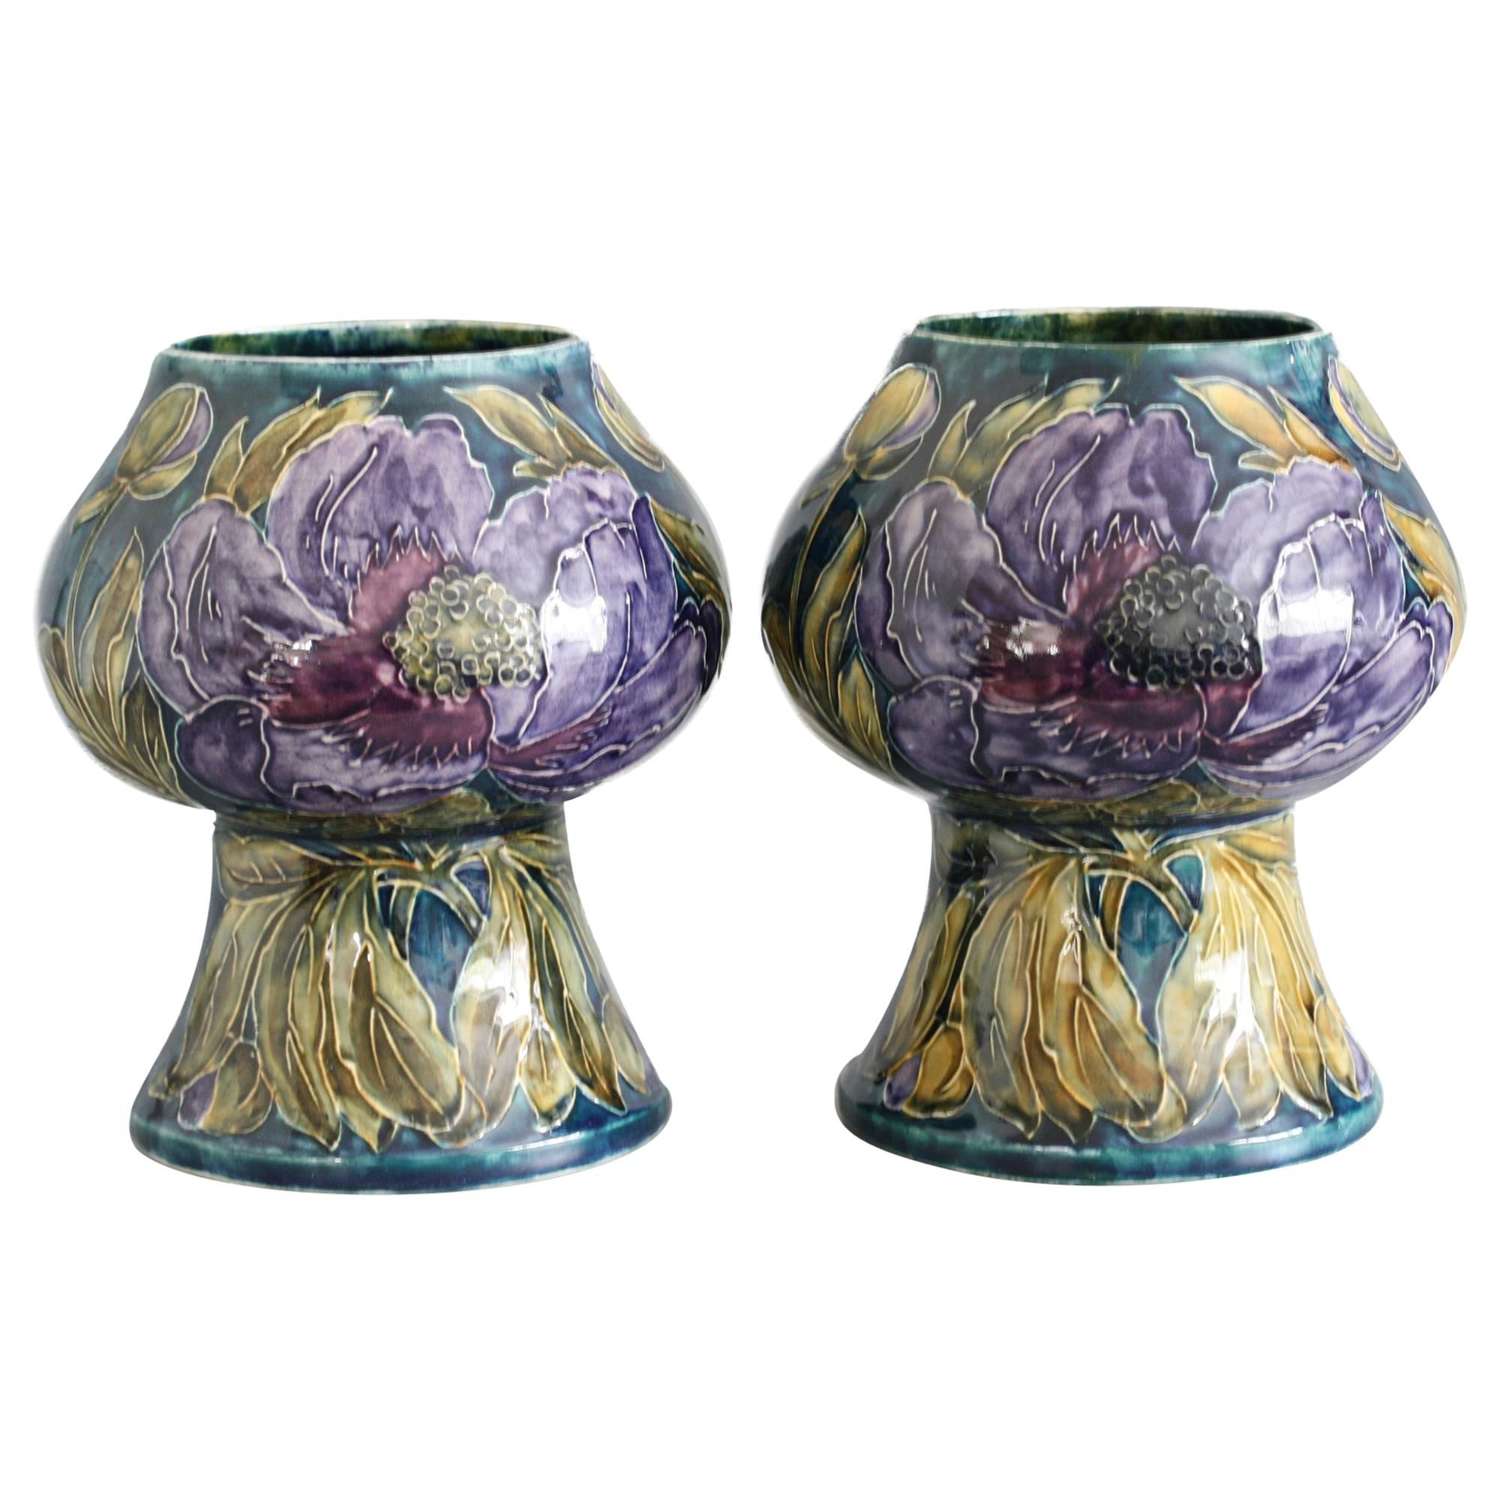 George Cartlidge Pair of Hancock Morris Ware Art Deco Vases Painted wi